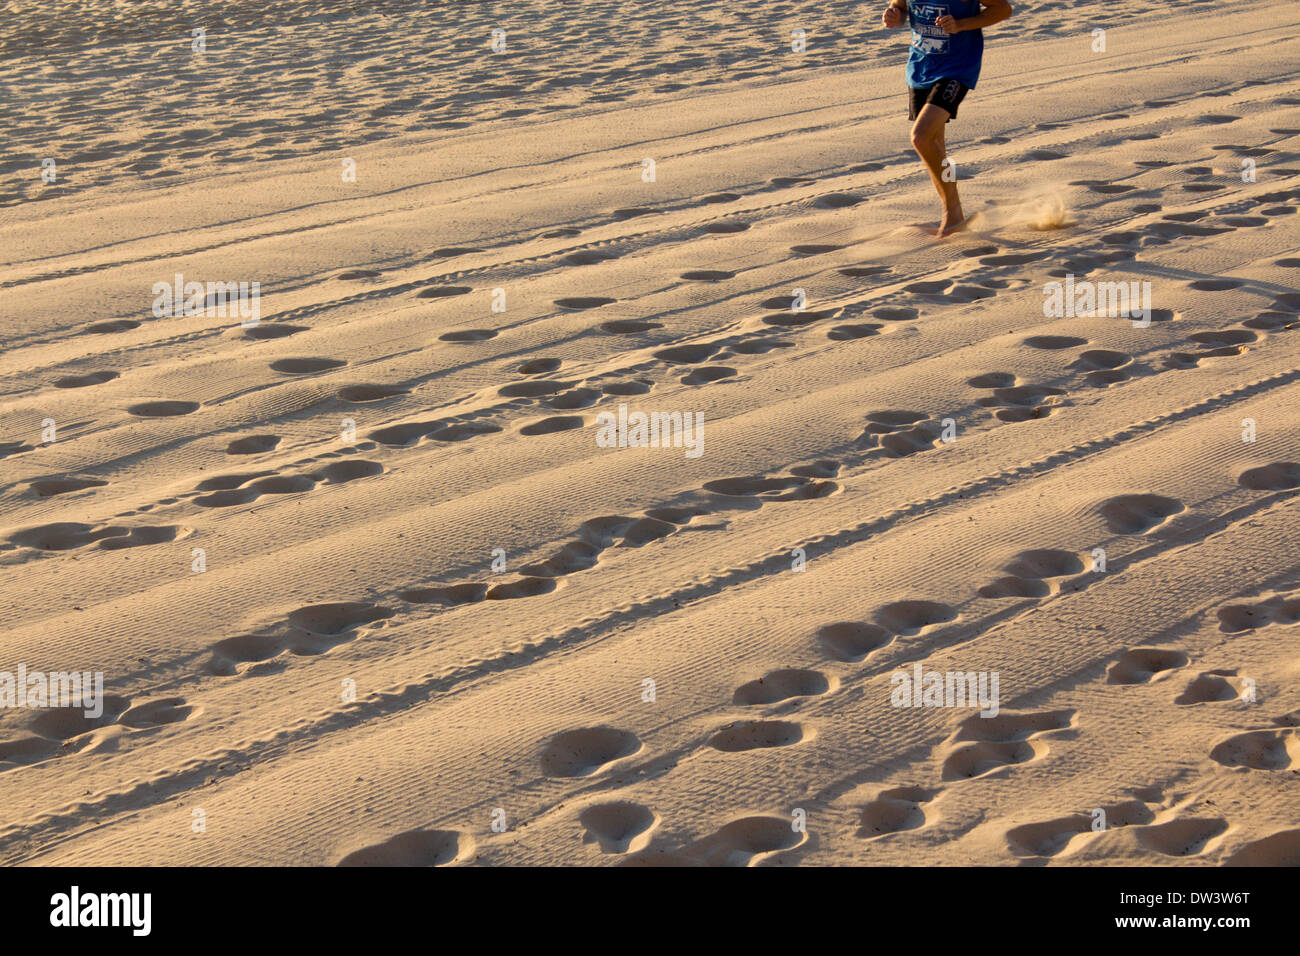 Empreintes et traces de pneu dans le sable à l'aube avec coureur de l'angle supérieur de l'image Plage Steyne Manly Sydney NSW Australie Banque D'Images